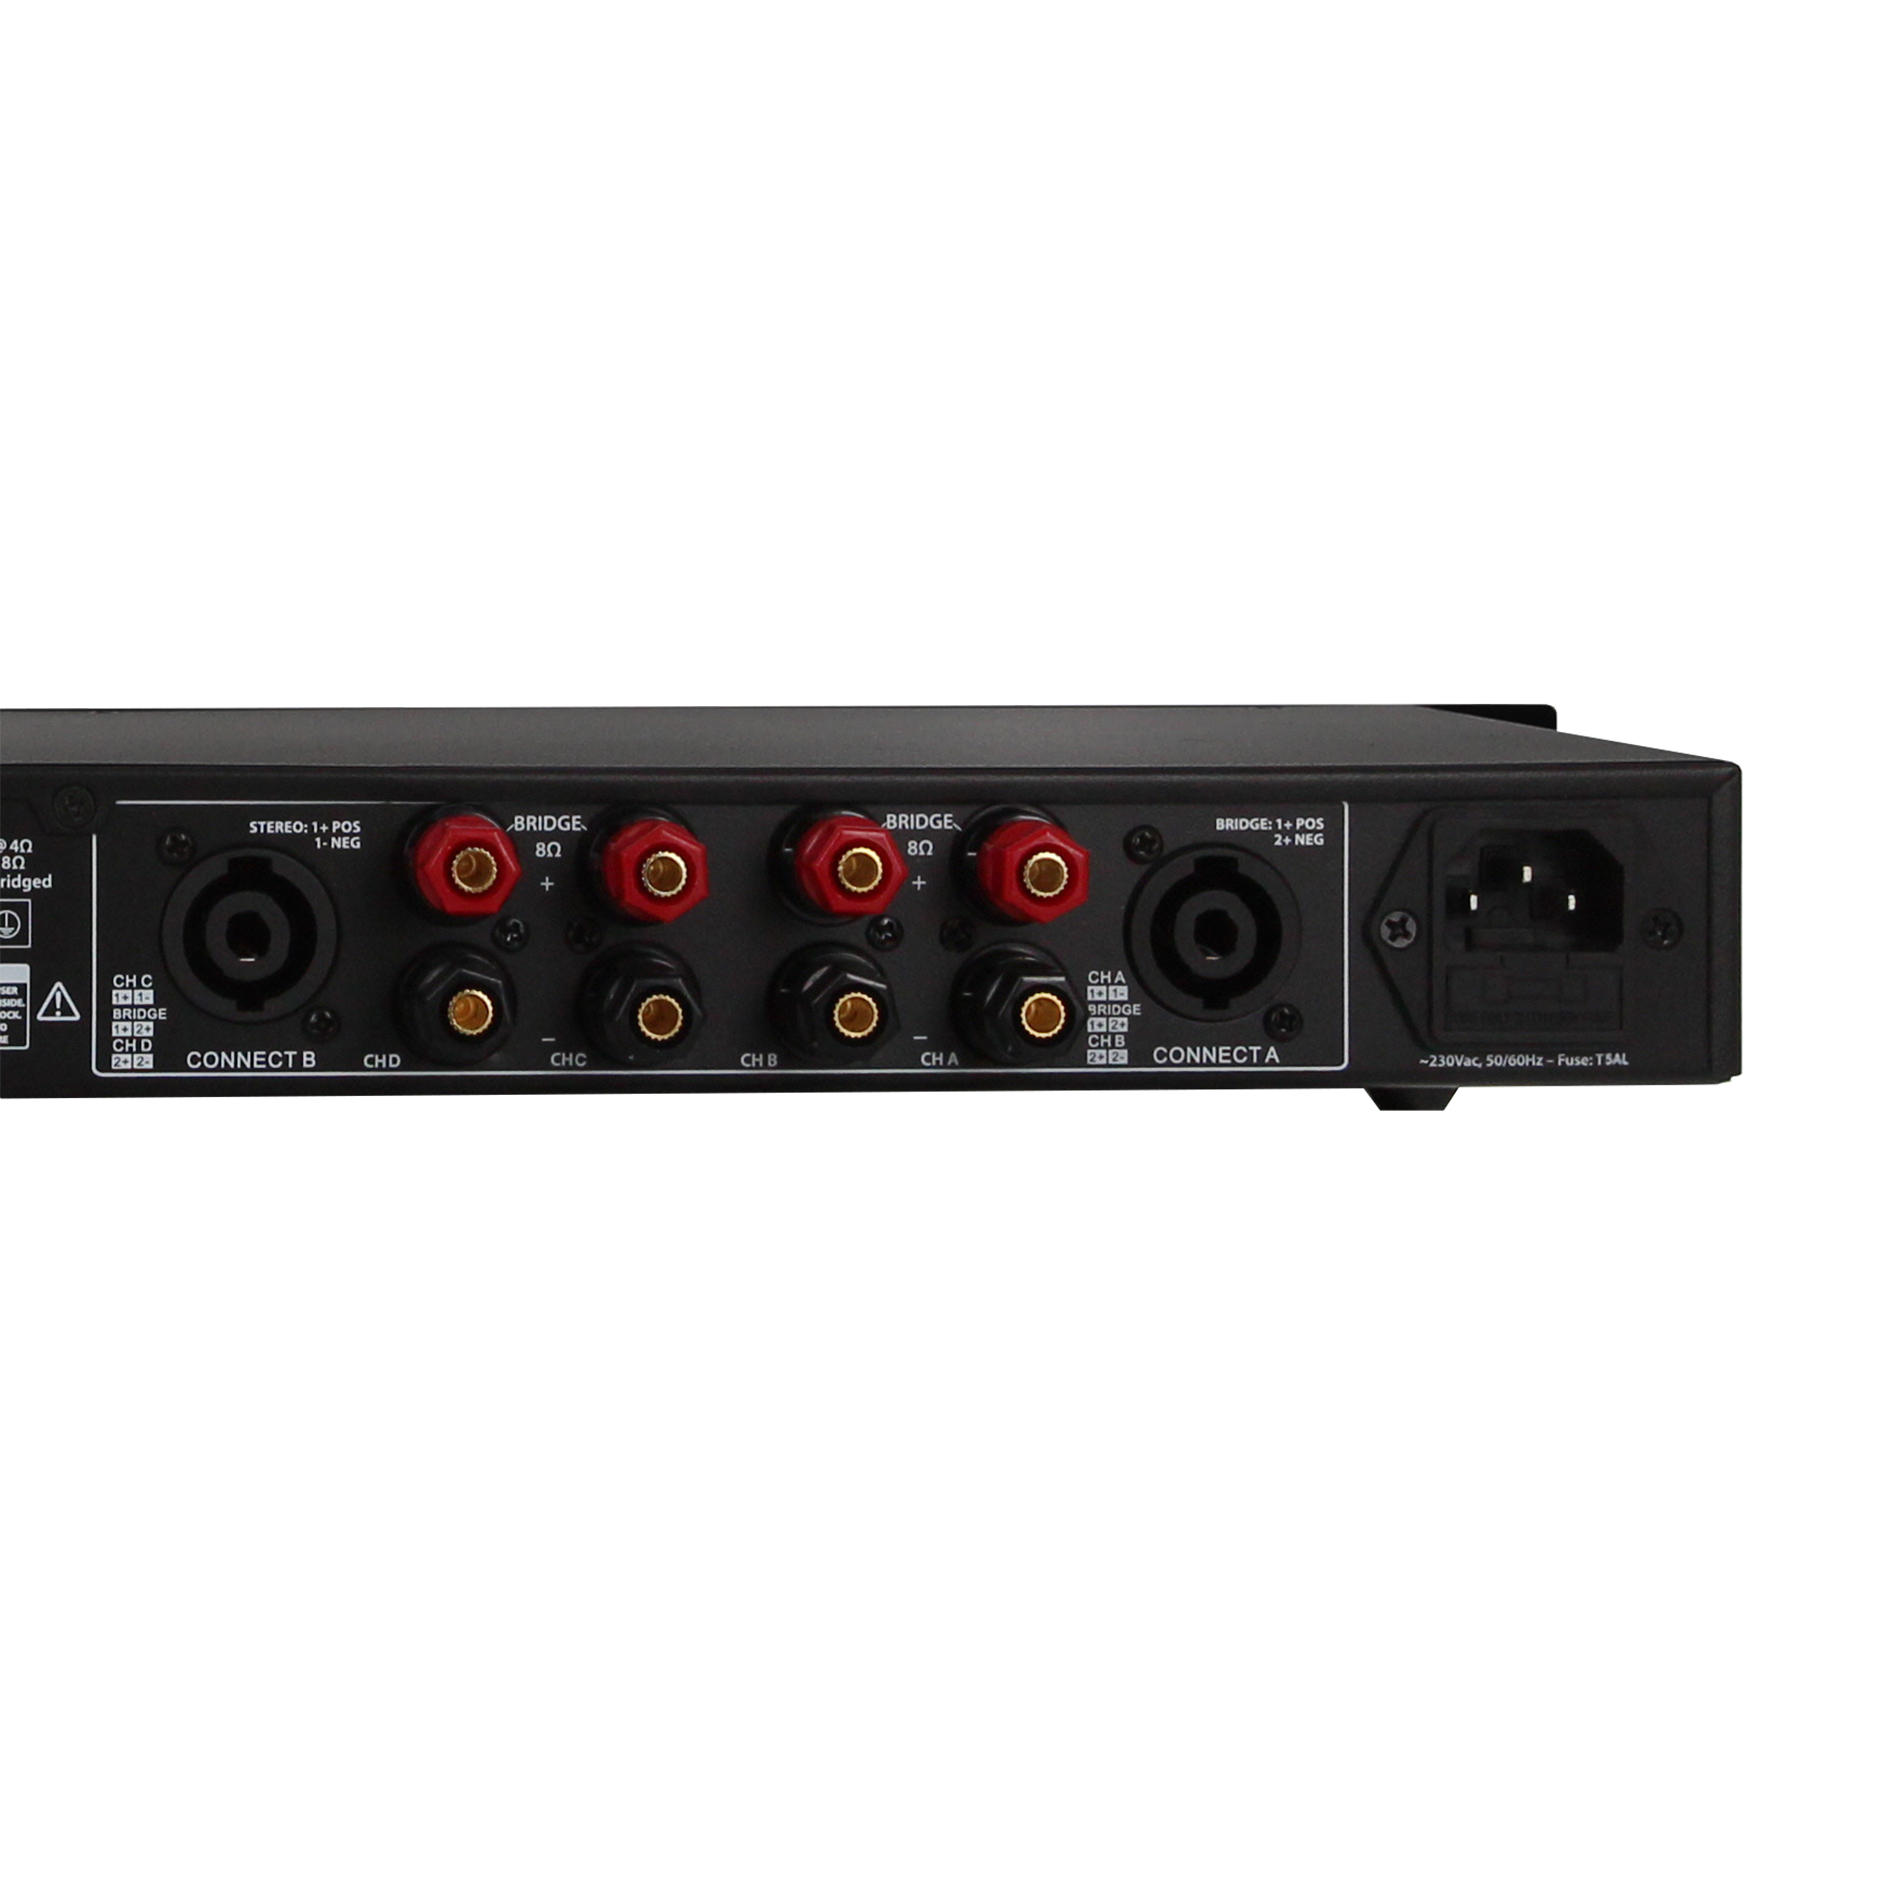 Definitive Audio Quad 1u 200d - Multiple channels power amplifier - Variation 3